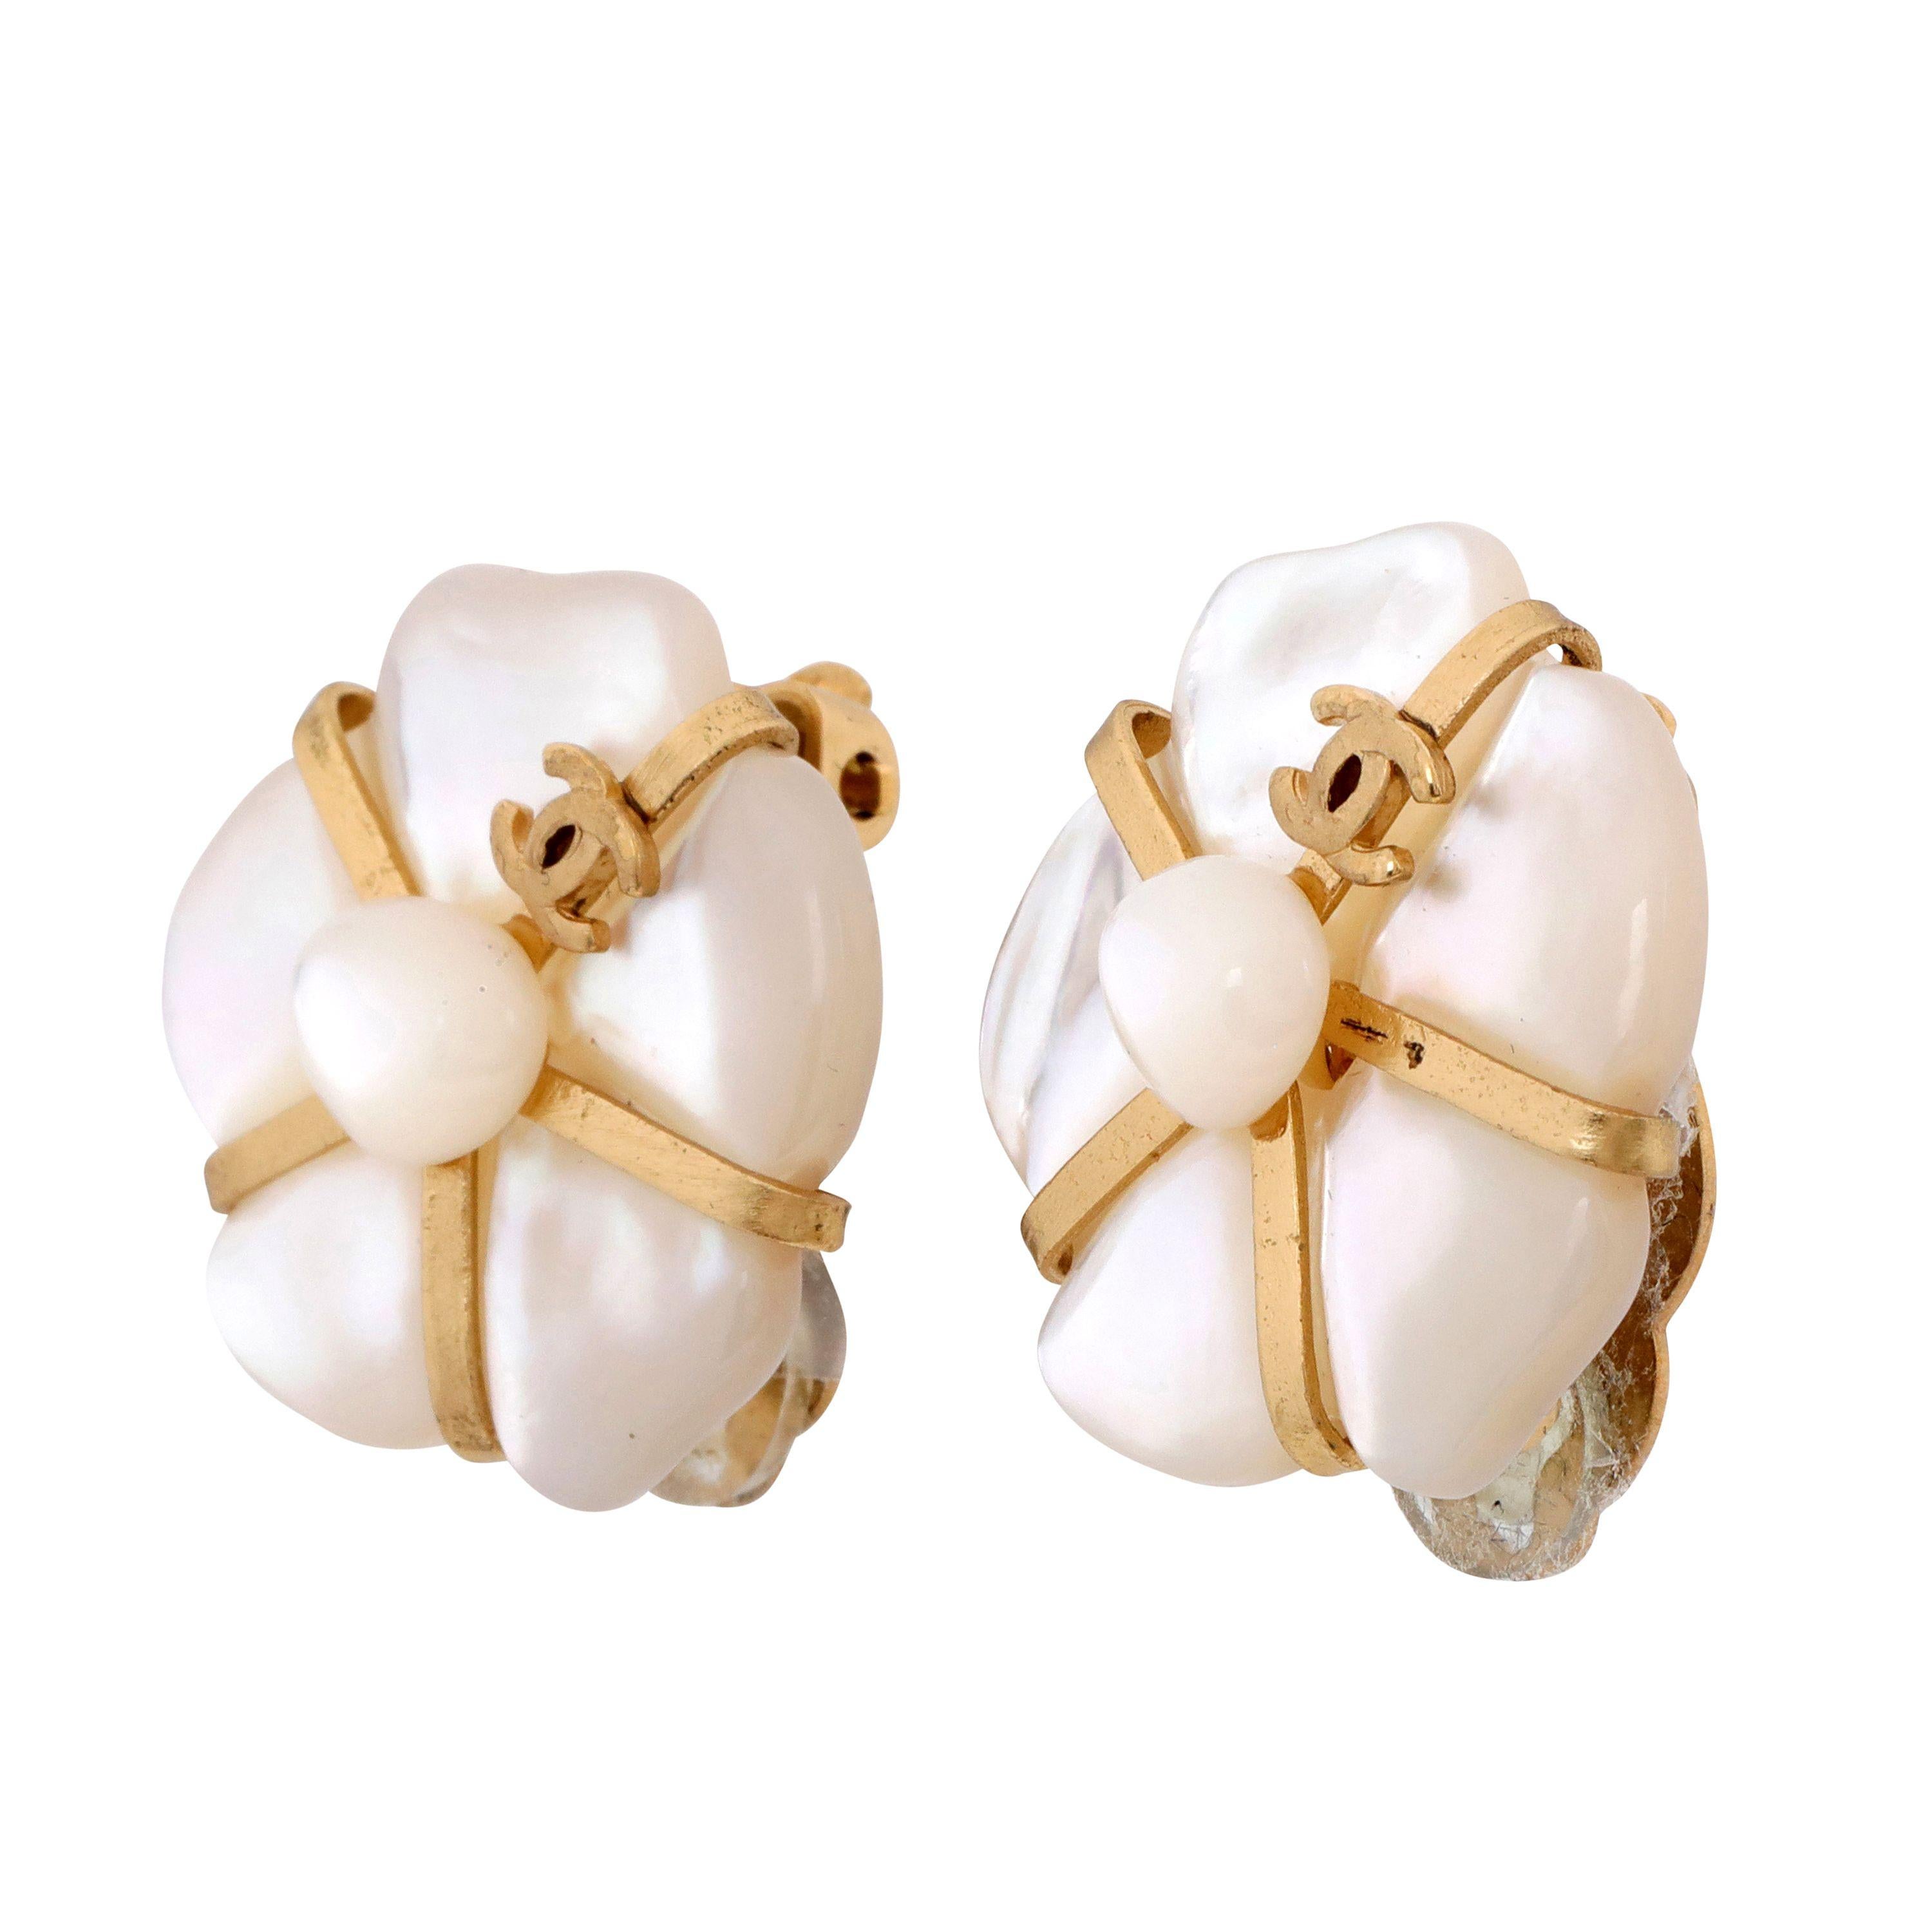 Diese authentischen Chanel Perlmutt-Kamelien-Ohrringe sind aus der 2001 Fine Jewelry Kollektion.  Abstrakte Kamelienblüte aus Perlmutt in der Mitte mit Gold. Clip-on-Stil.     Inklusive Tasche oder Box. 
PBF 13795
